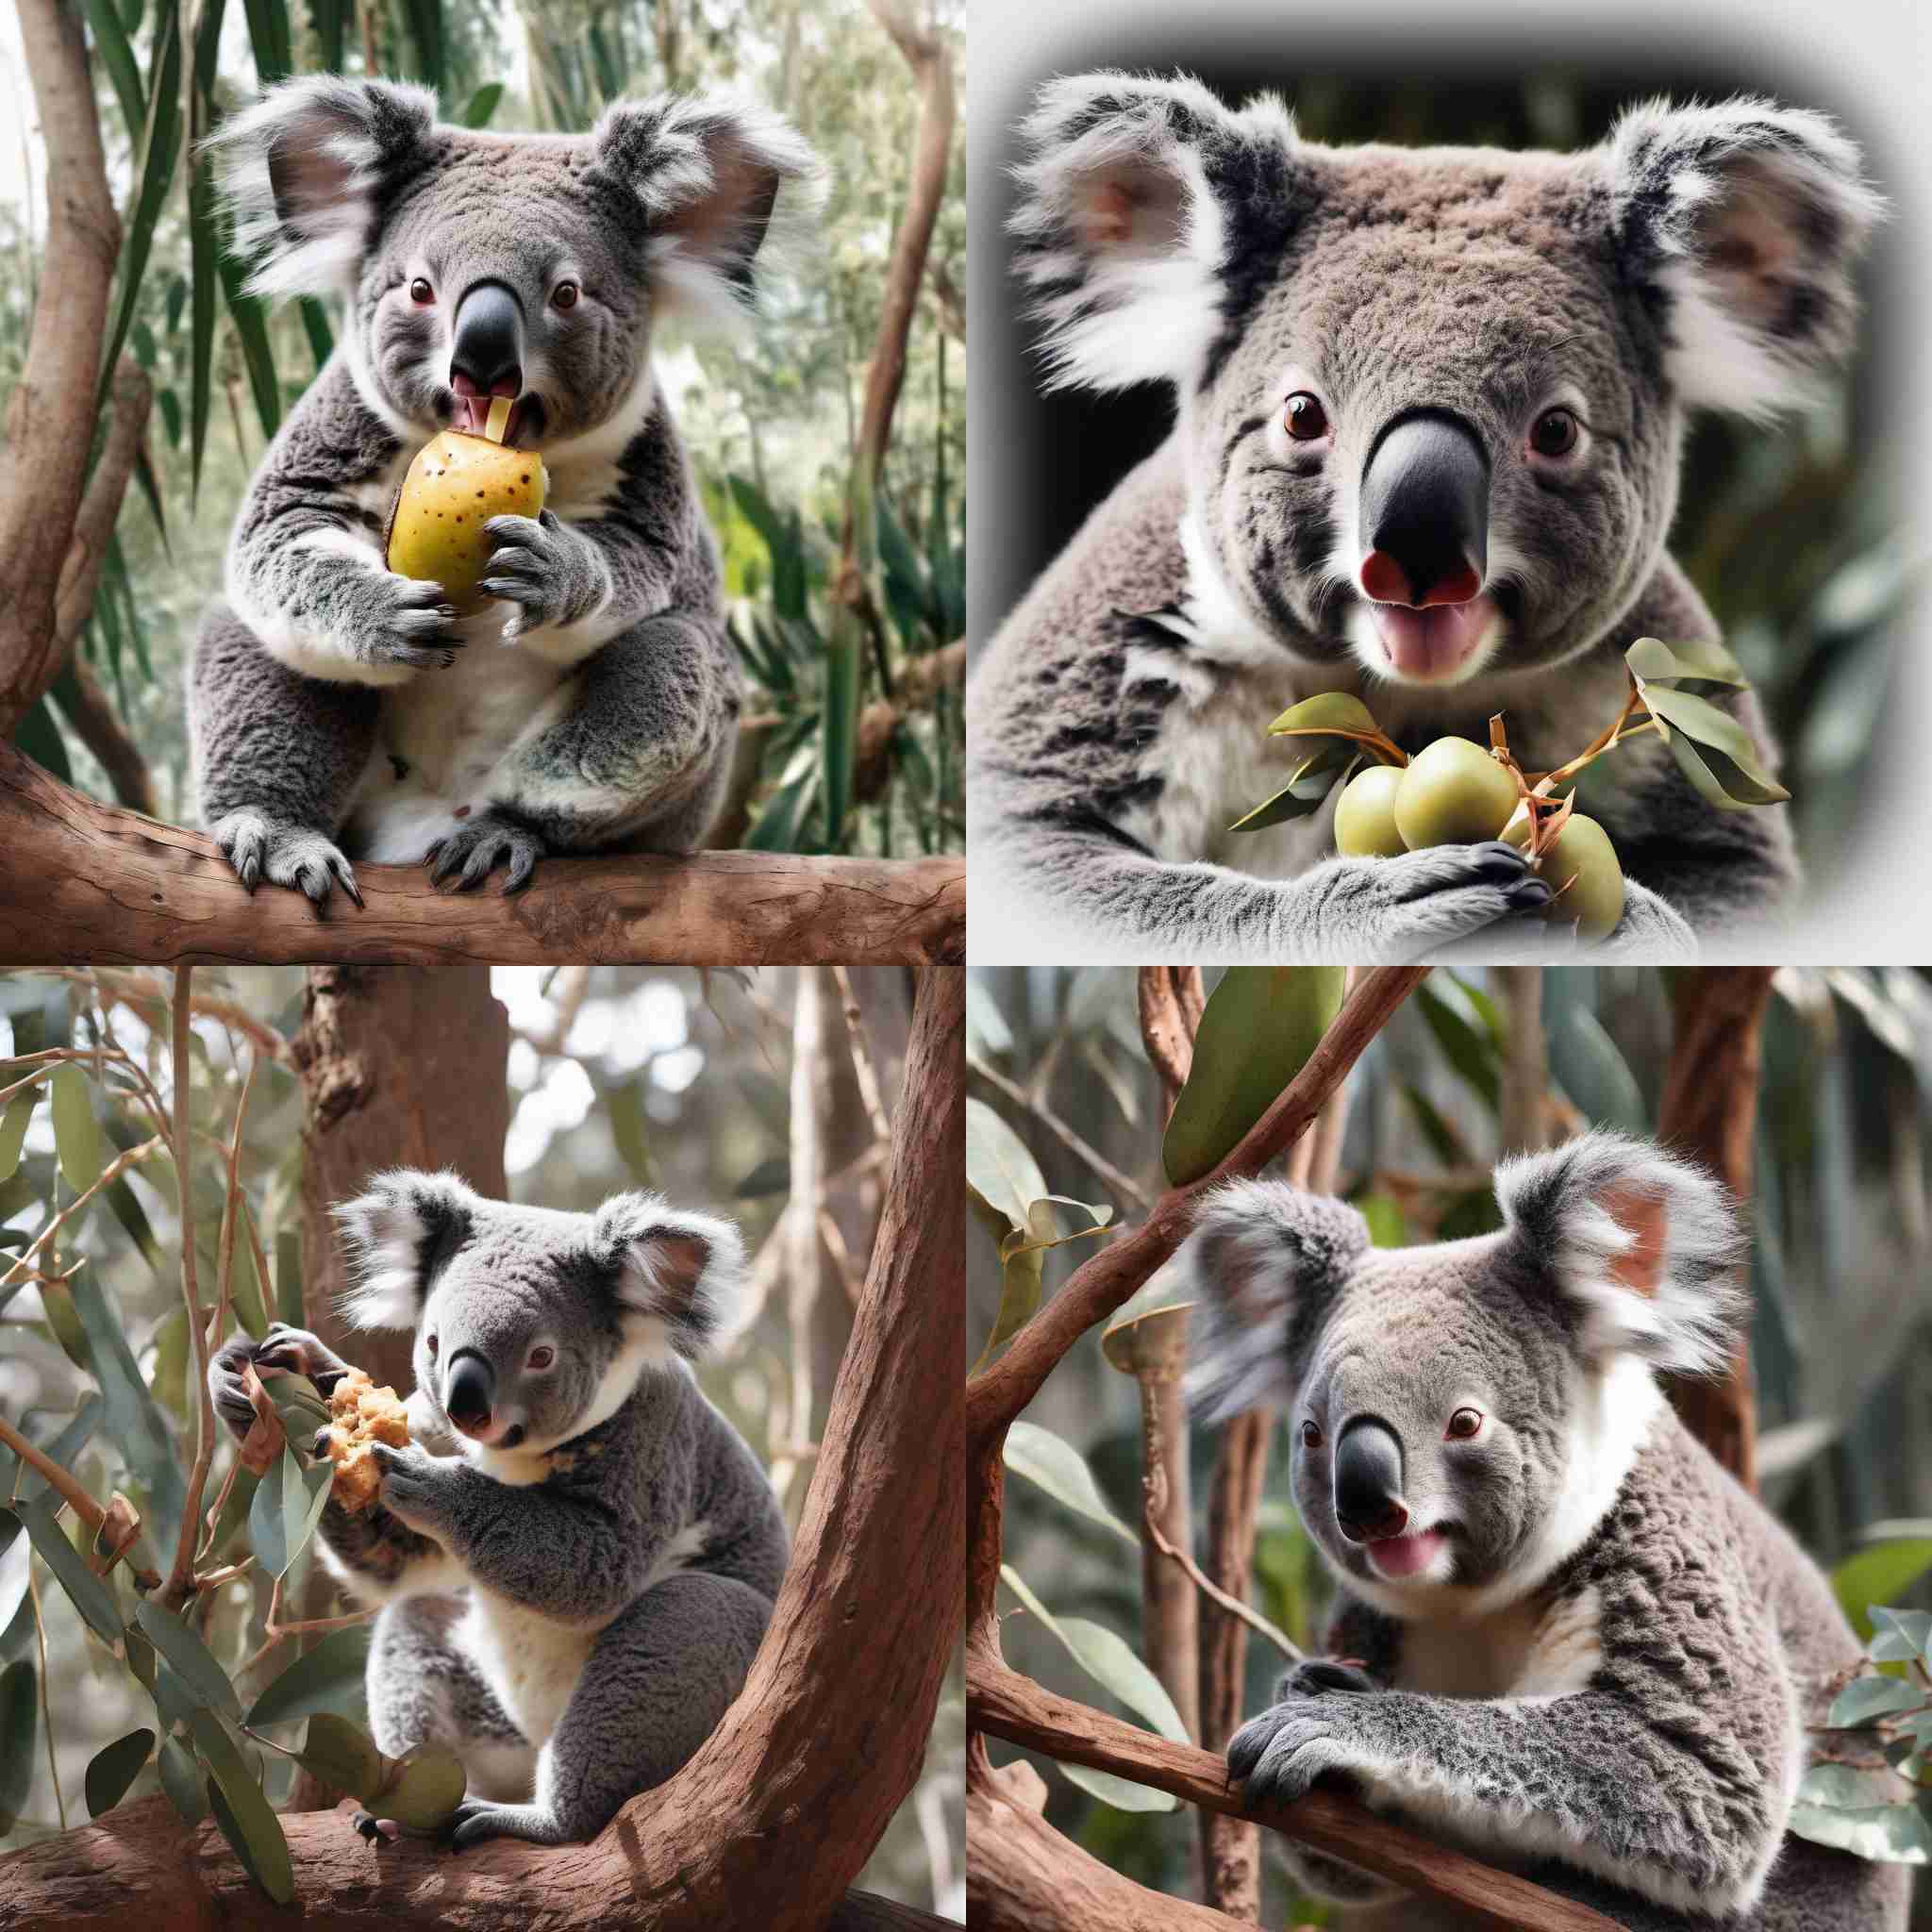 A koala eating